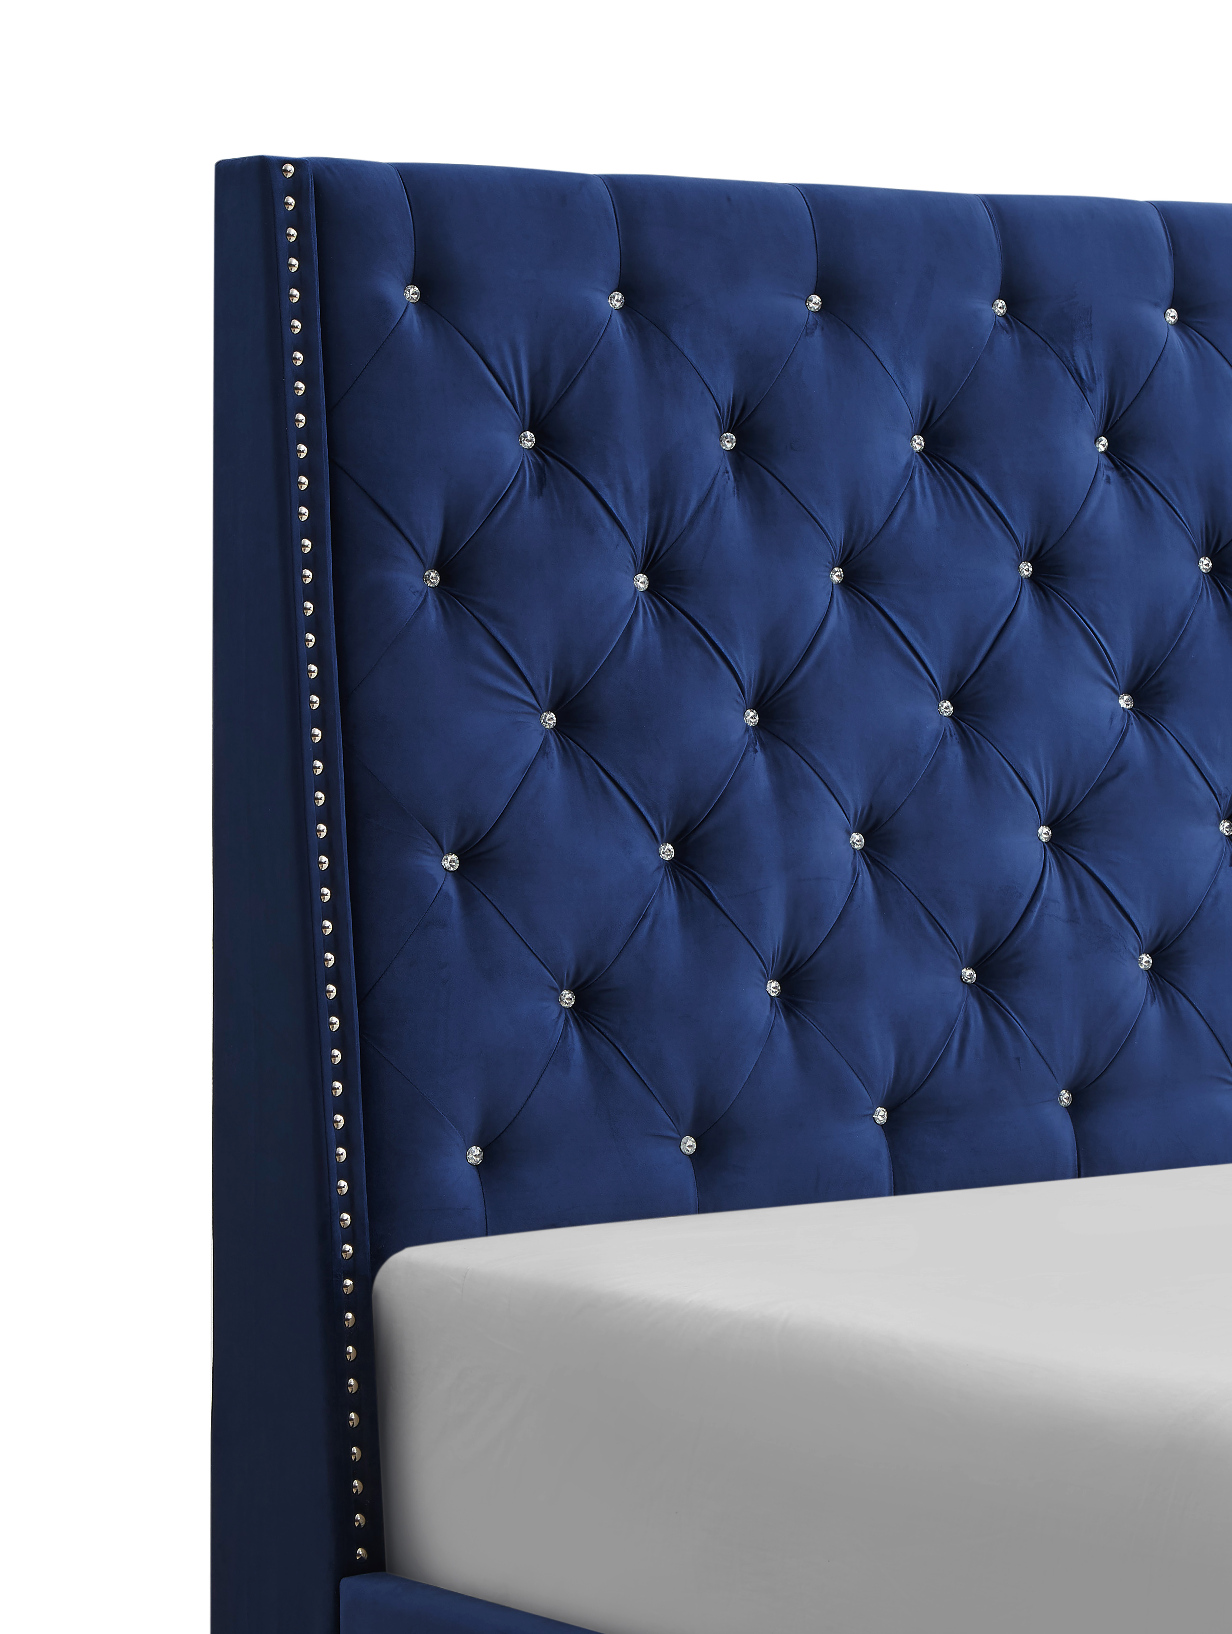 Chantilly Royal Blue Velvet Queen Upholstered Bed - SET | 5265RB-Q-HB | 5265RB-Q-FRW - Bien Home Furniture &amp; Electronics